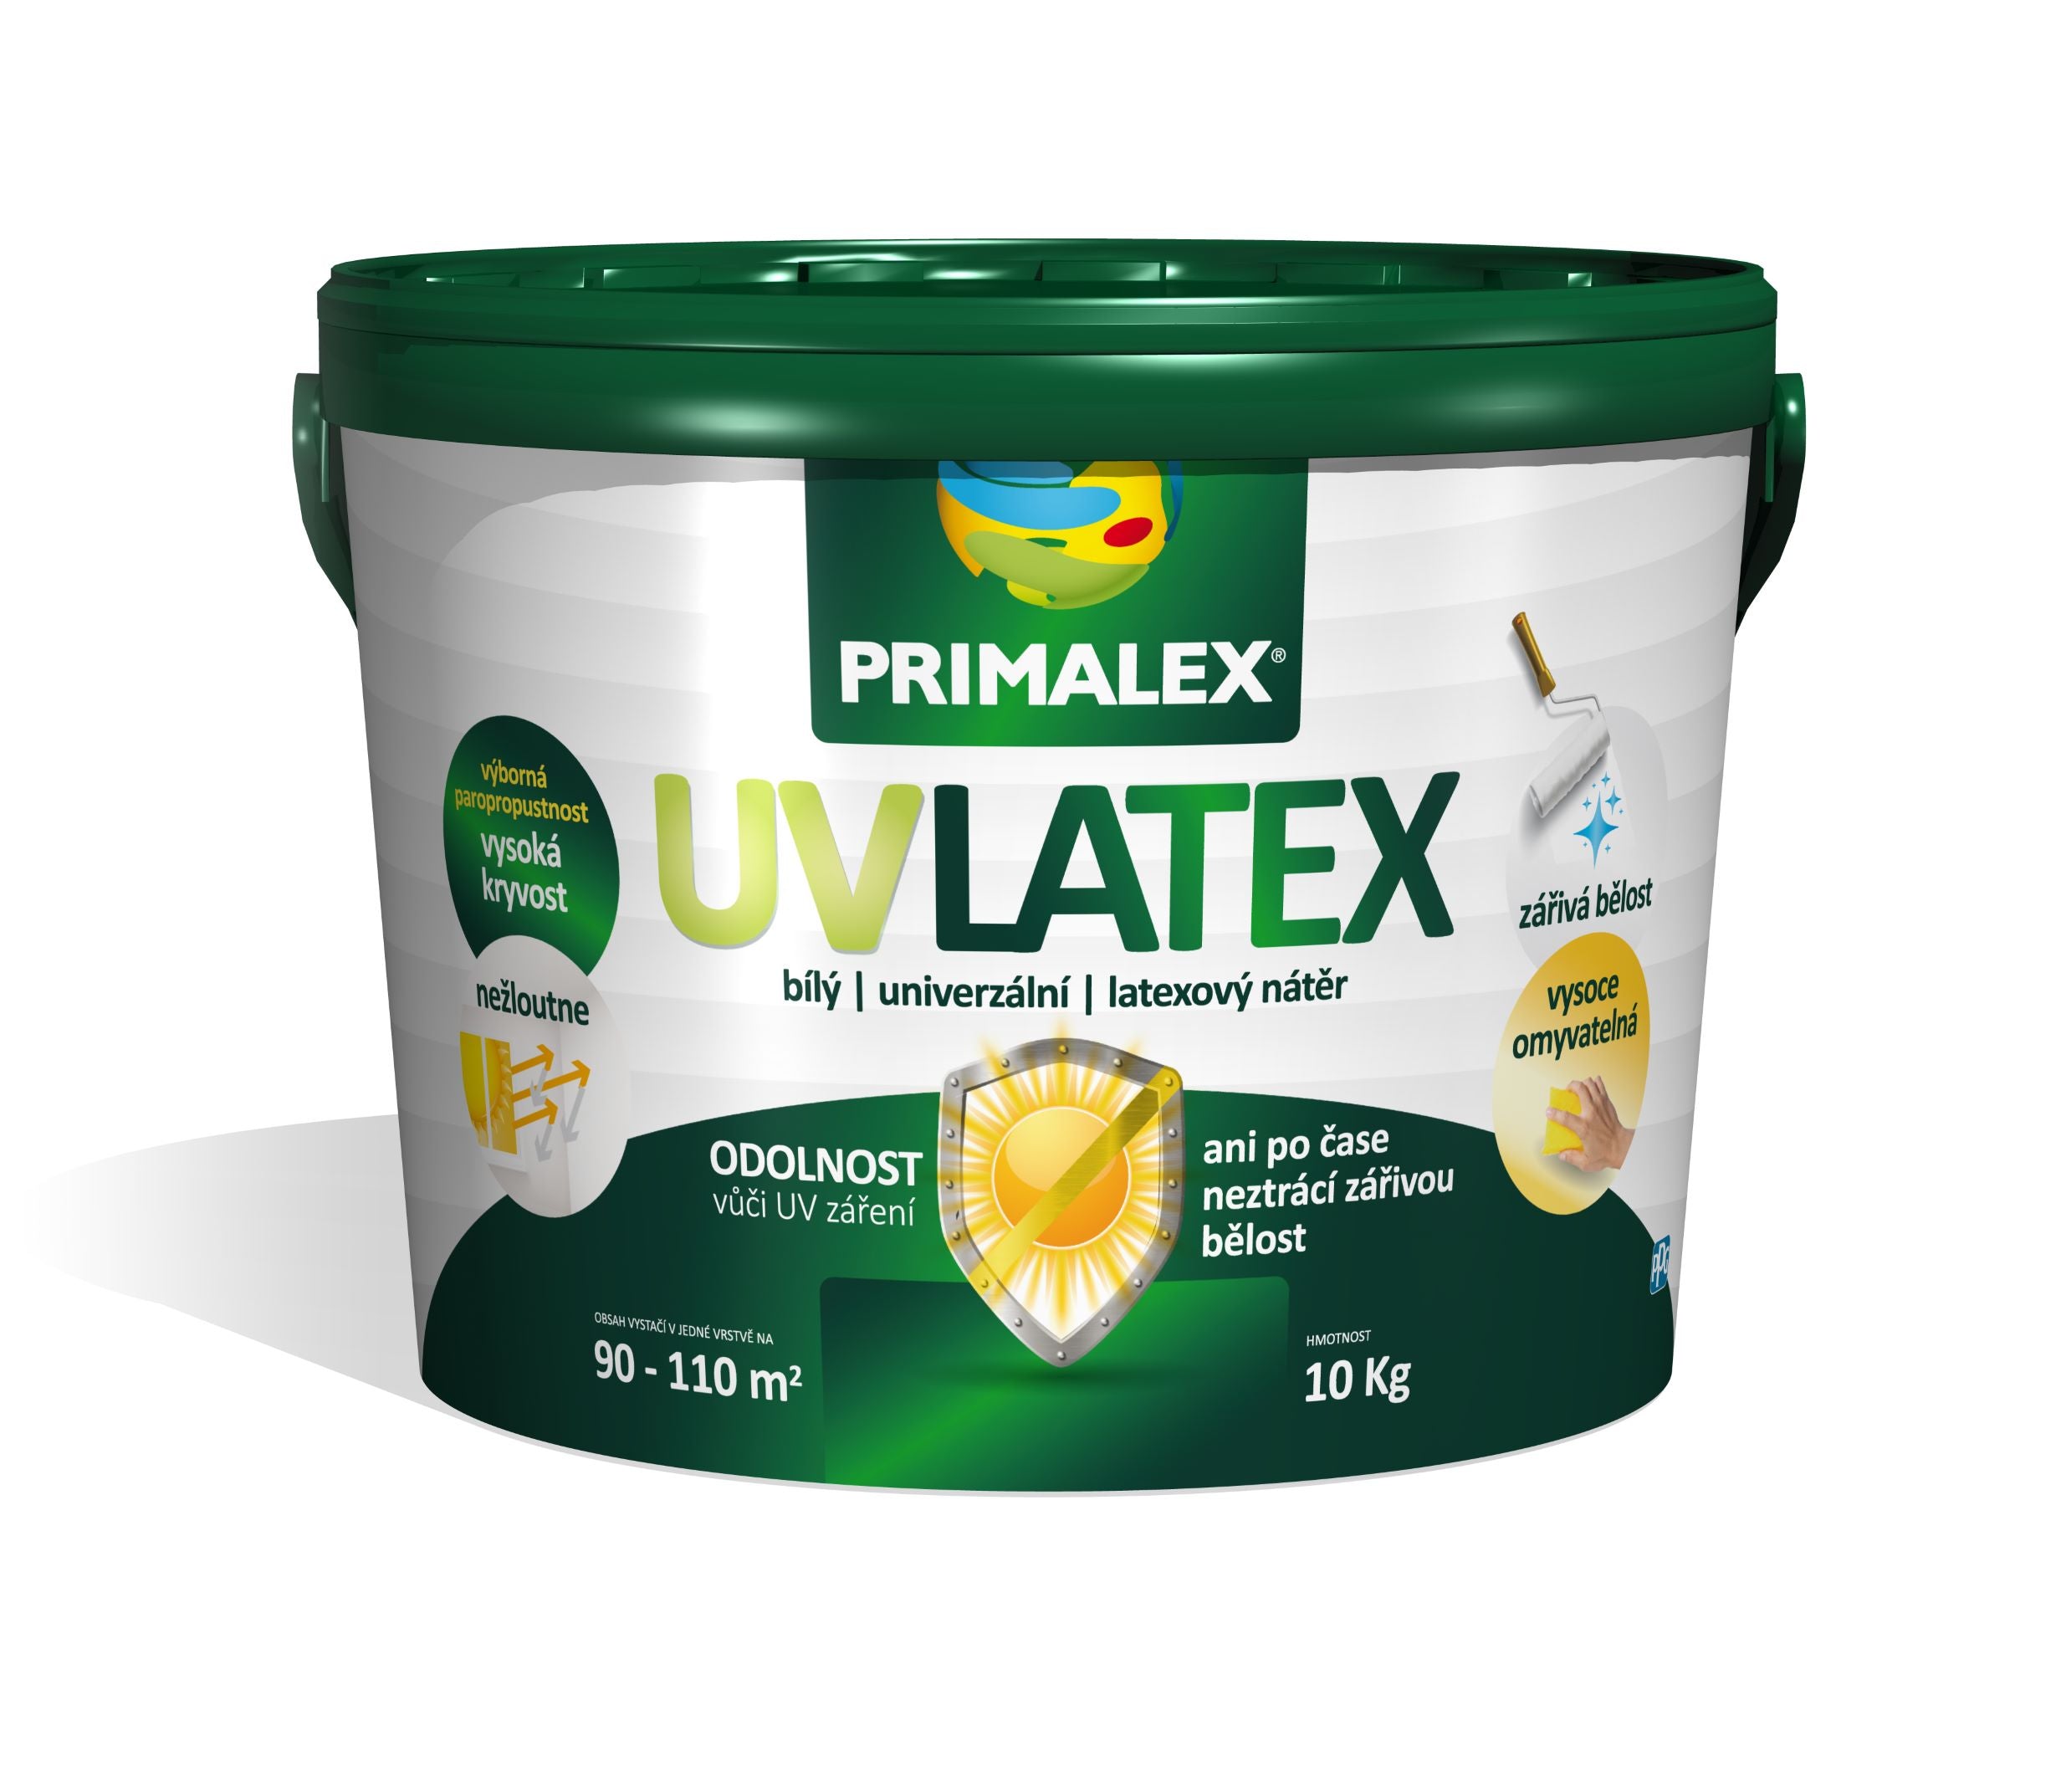 PRIMALEX UV LATEX bílý univerzální latexový nátěr